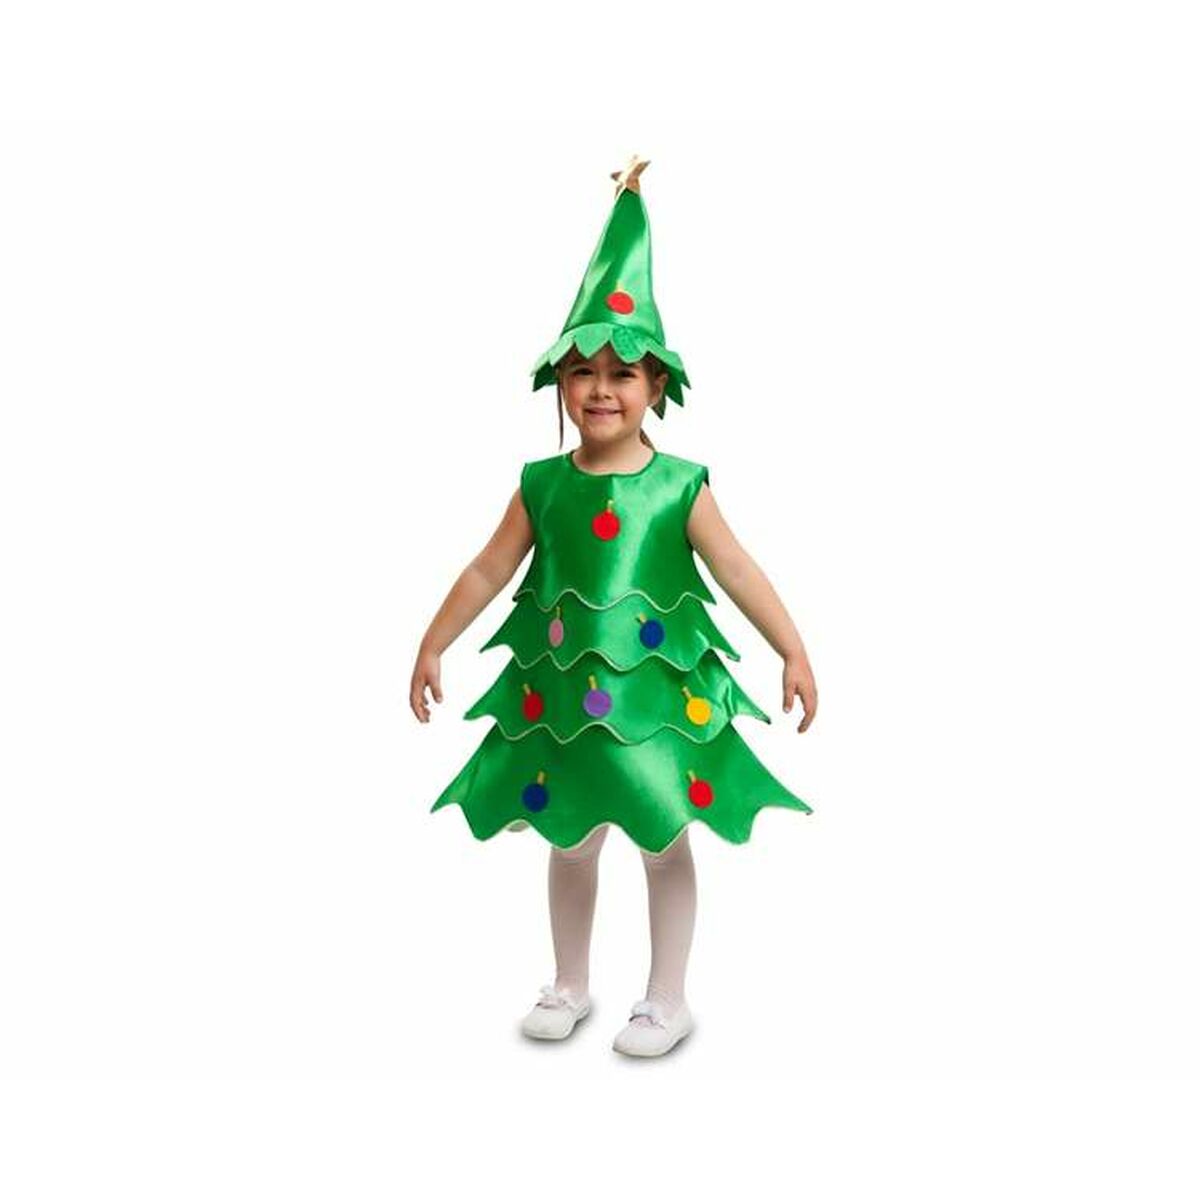 Verkleidung für Kinder My Other Me Weihnachtsbaum (2 Stücke)